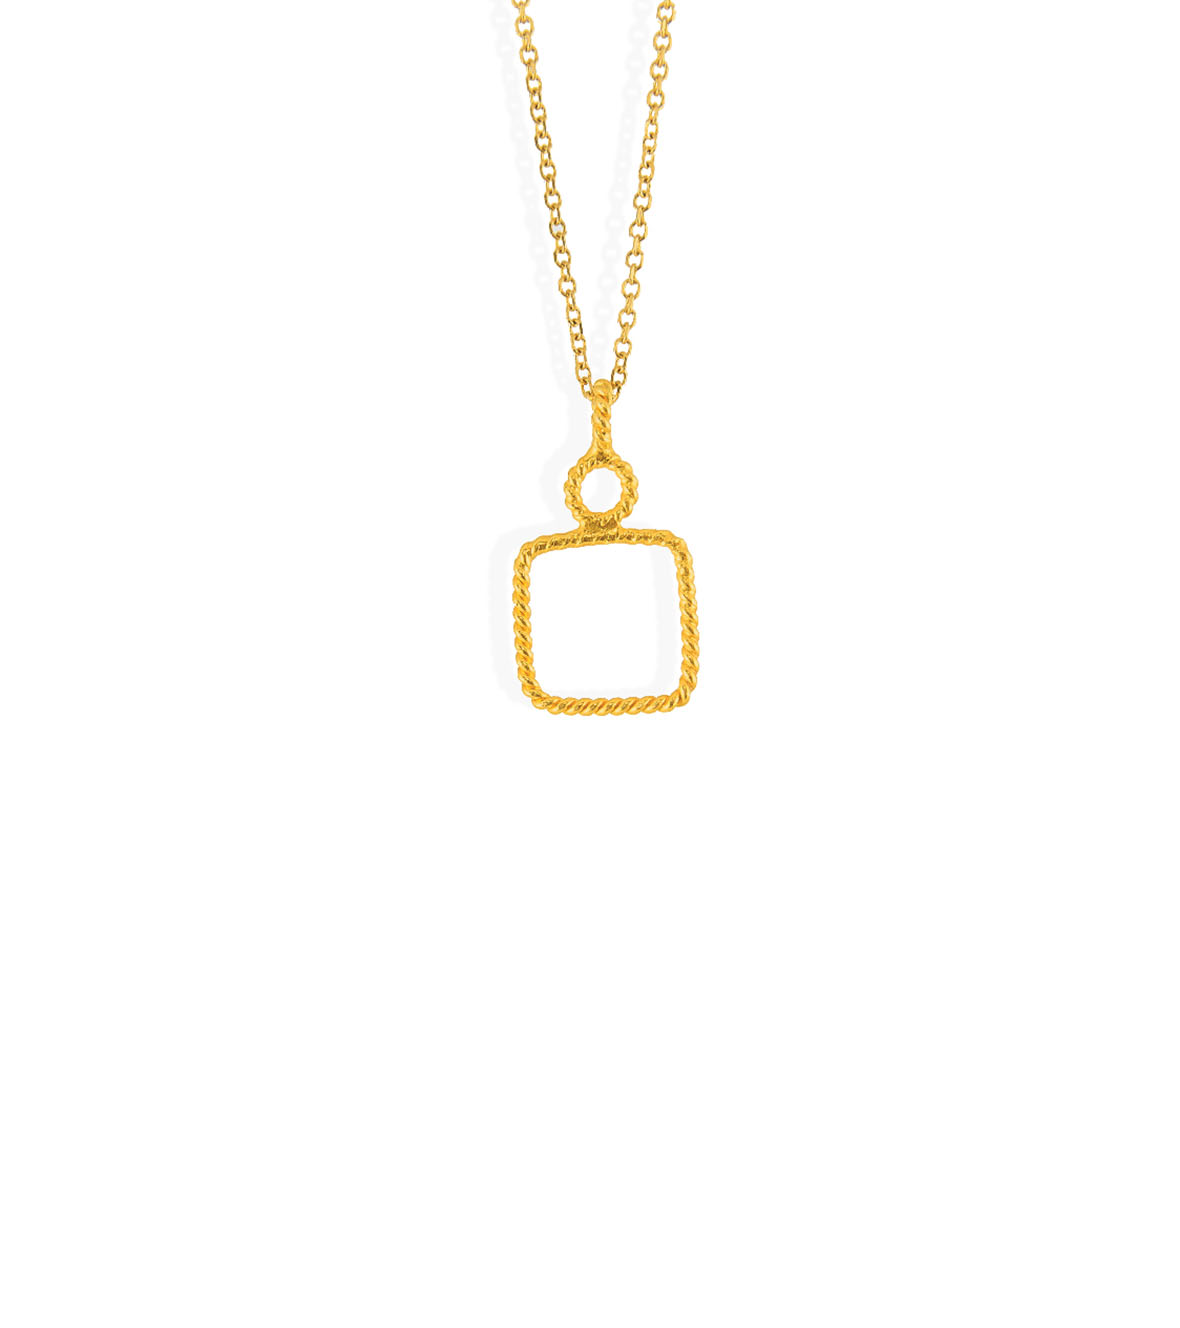 Tiny Square pendant by Christina Soubli